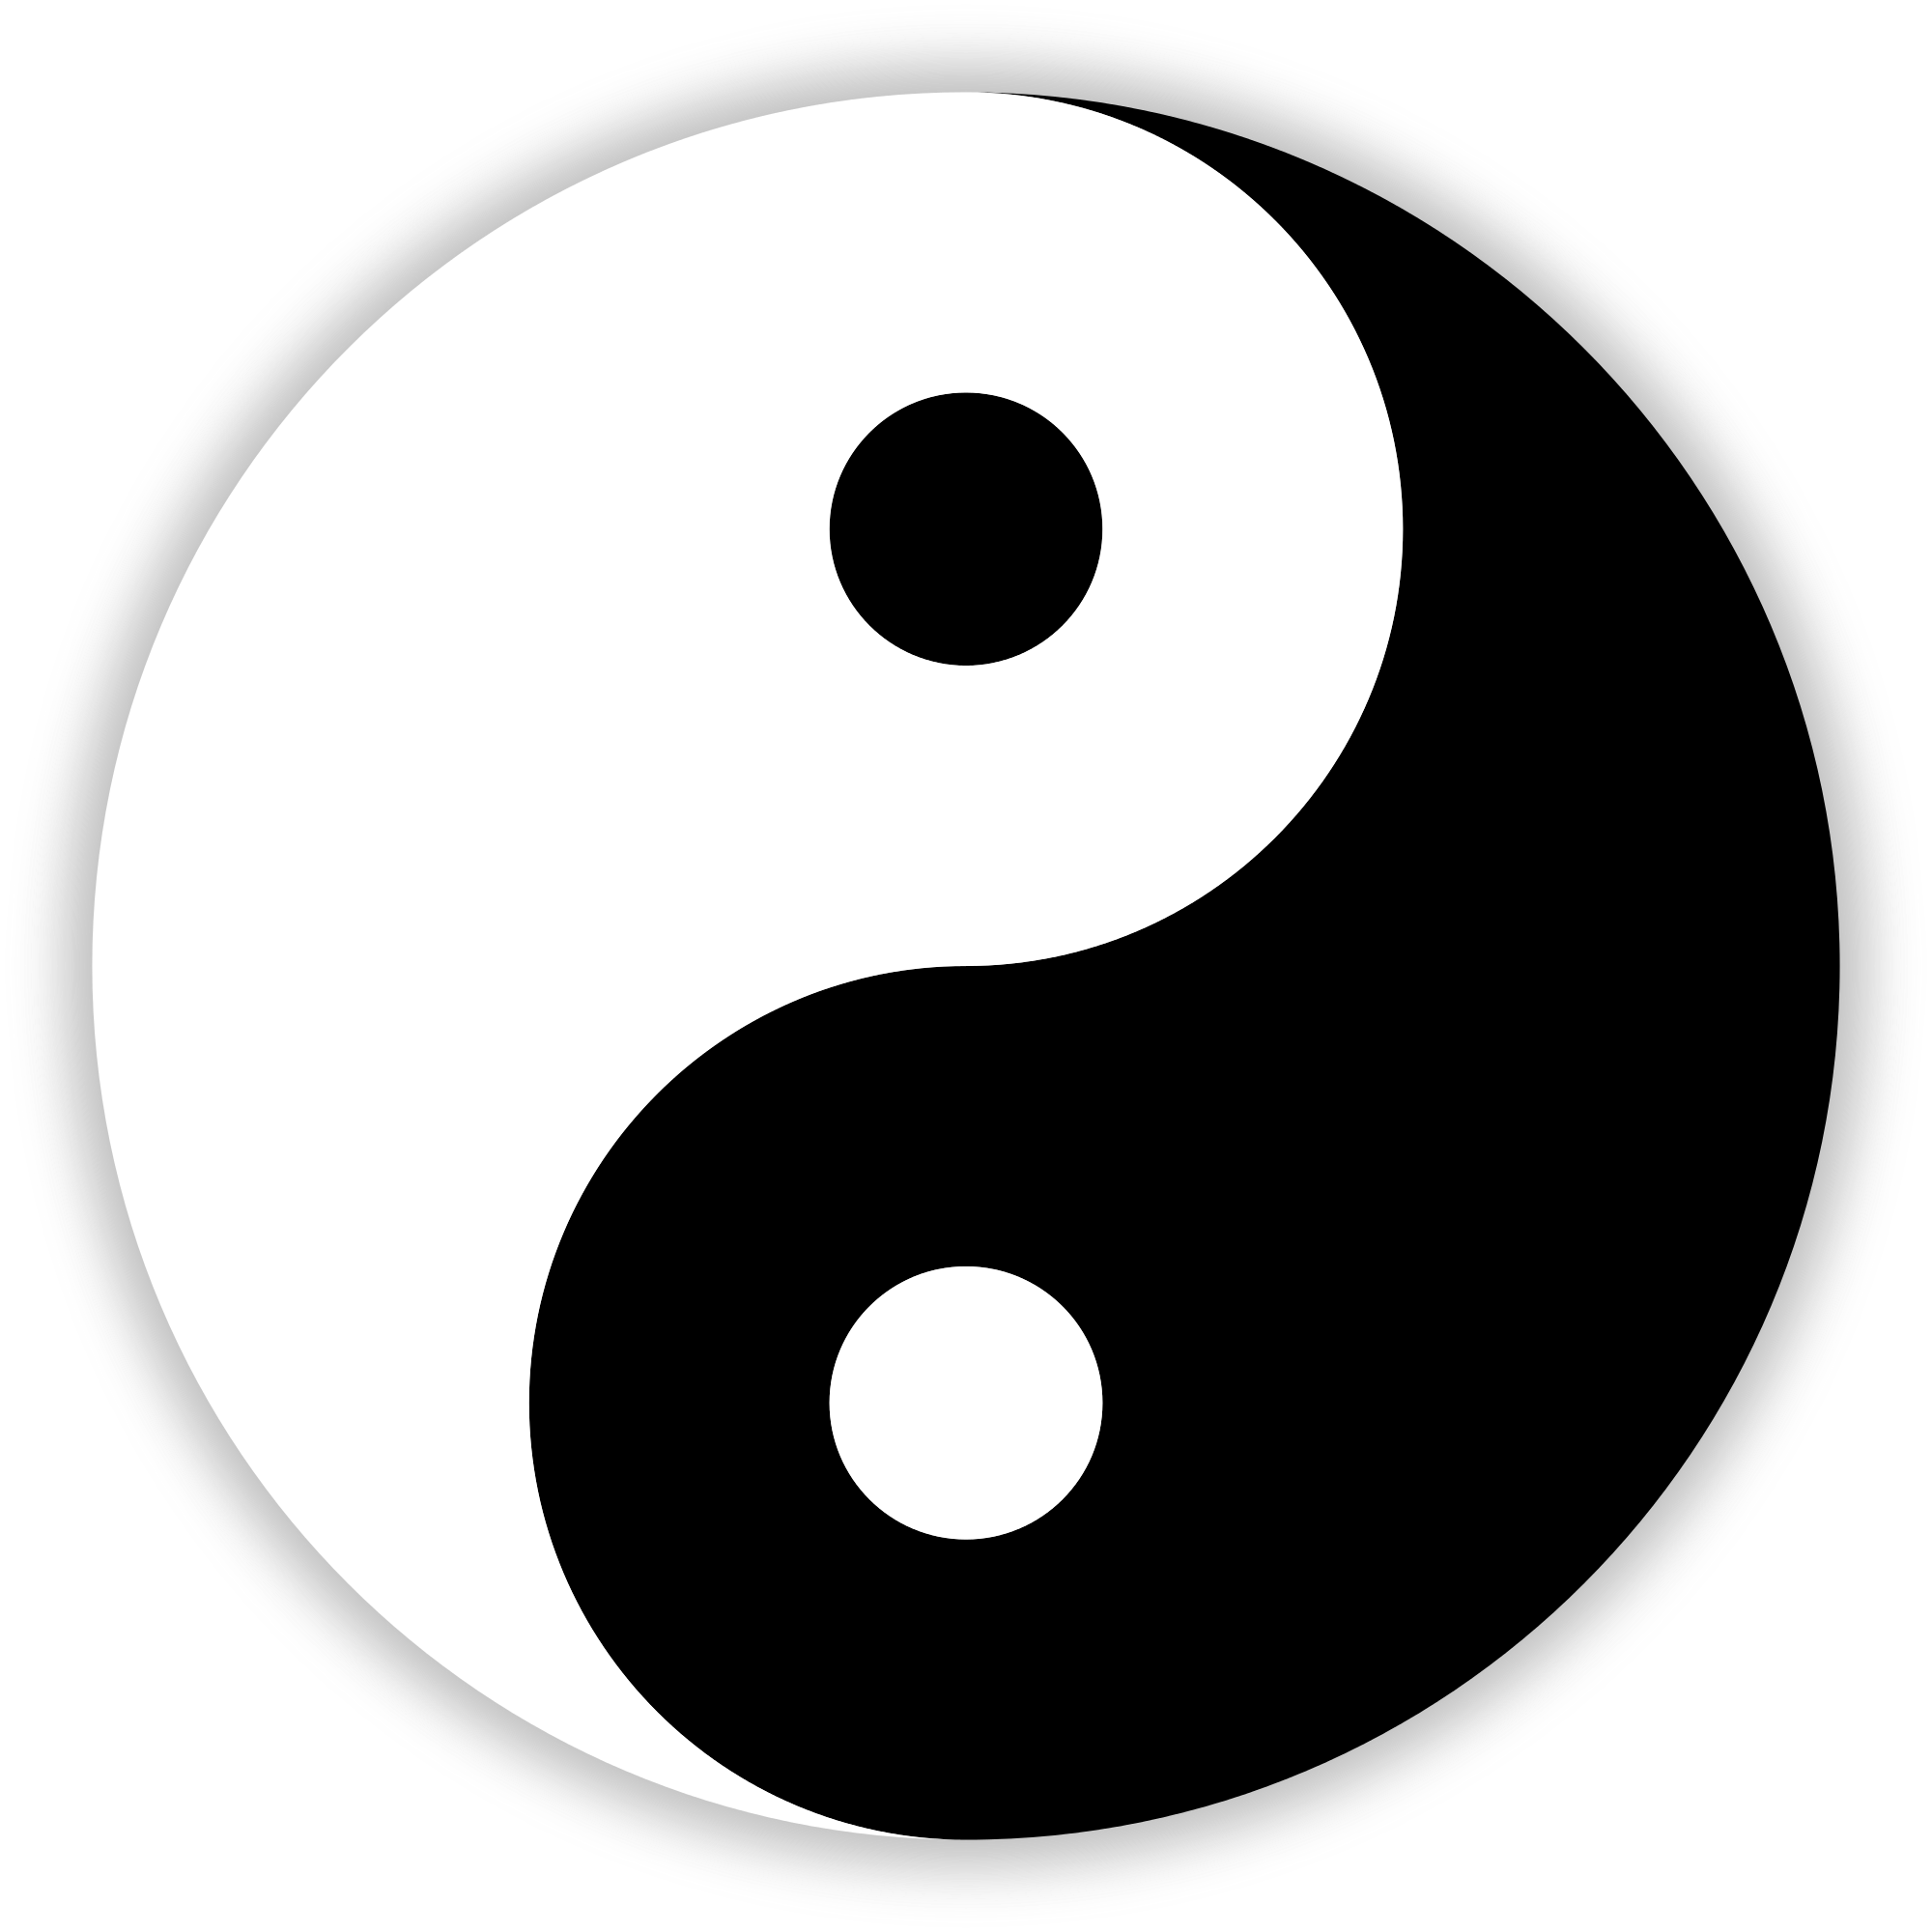 Chinese Symbol Black and White